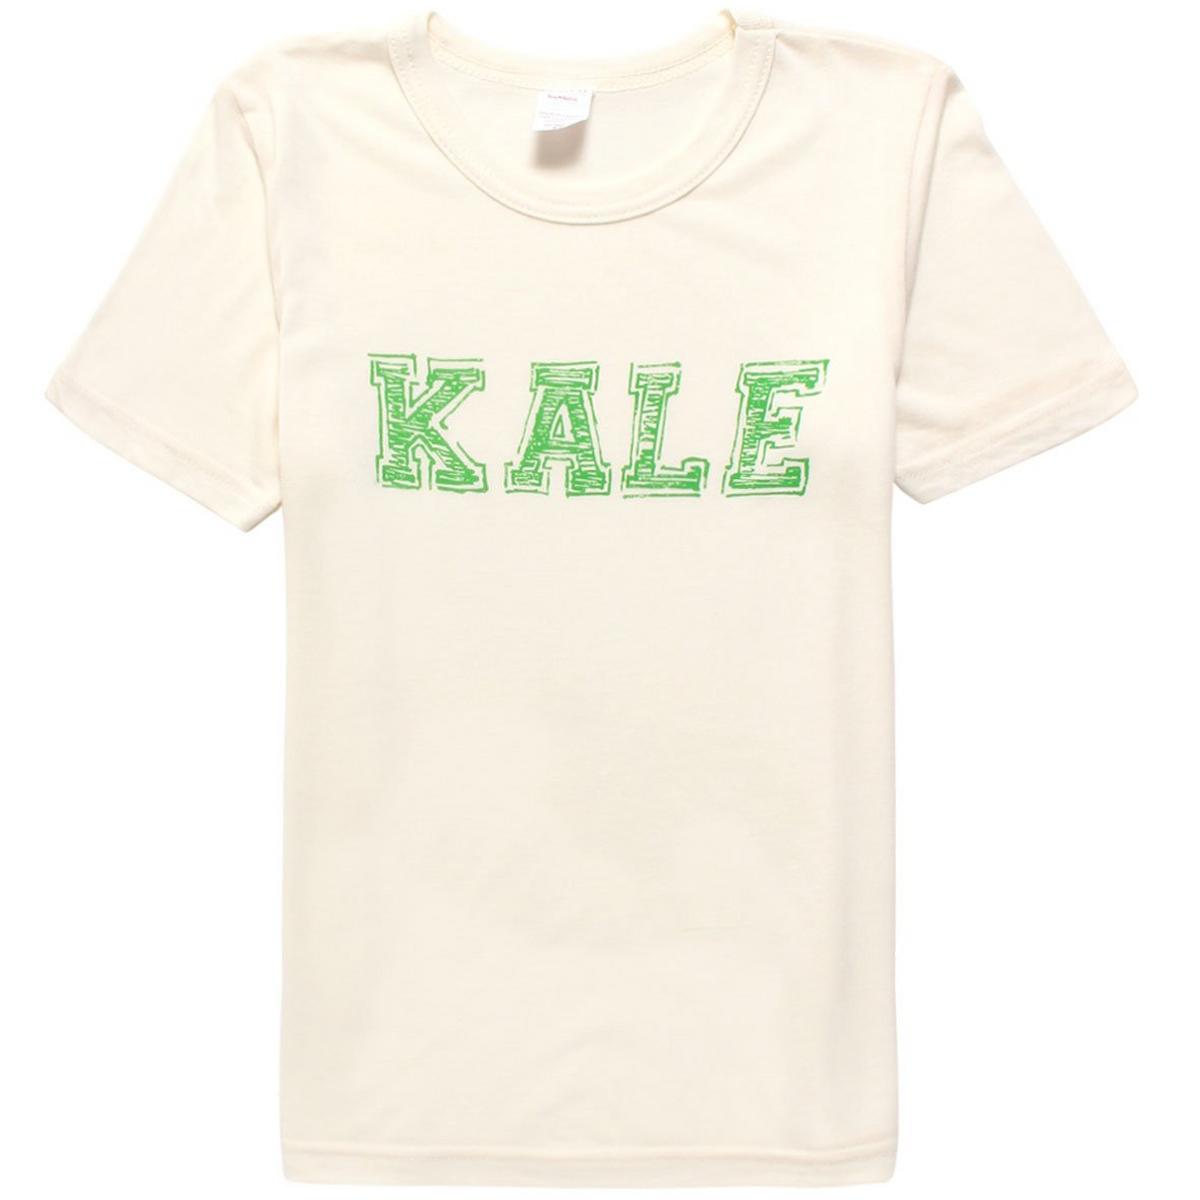 T-shirt Kale pour juniors [7-16]